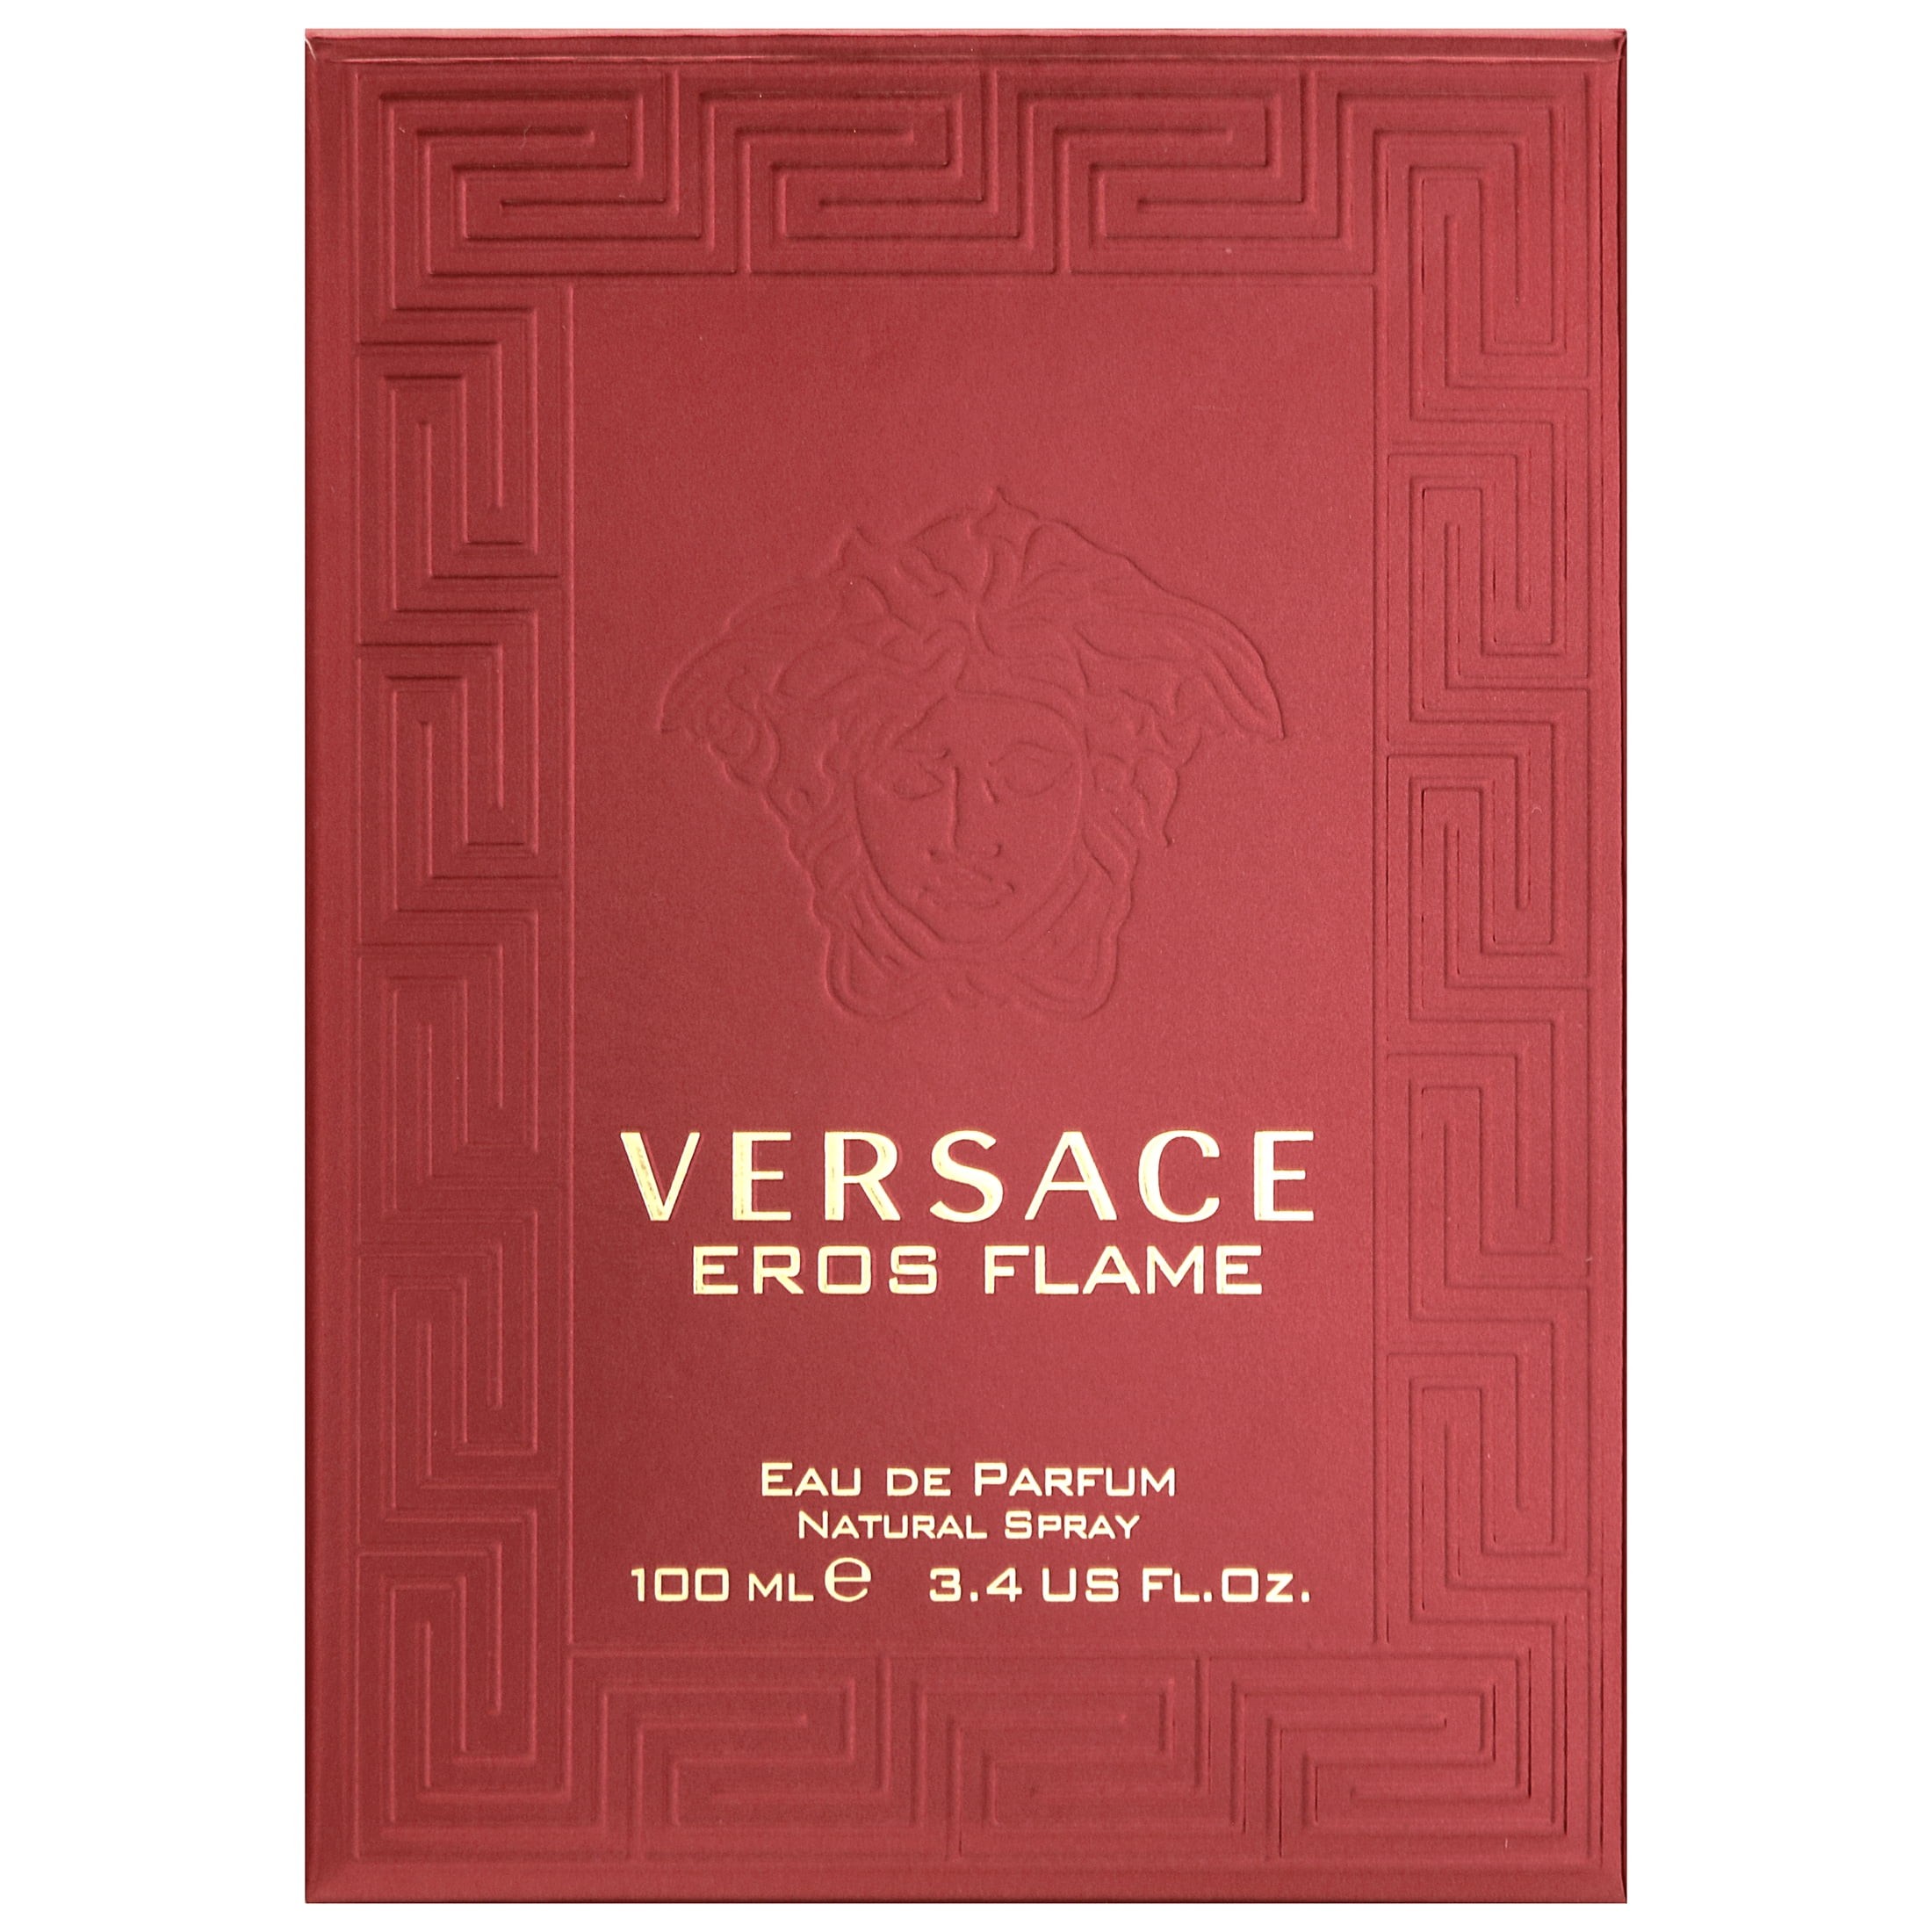 Versace Eau De Parfum, Eros Flame, Natural Spray - 1.7 fl oz